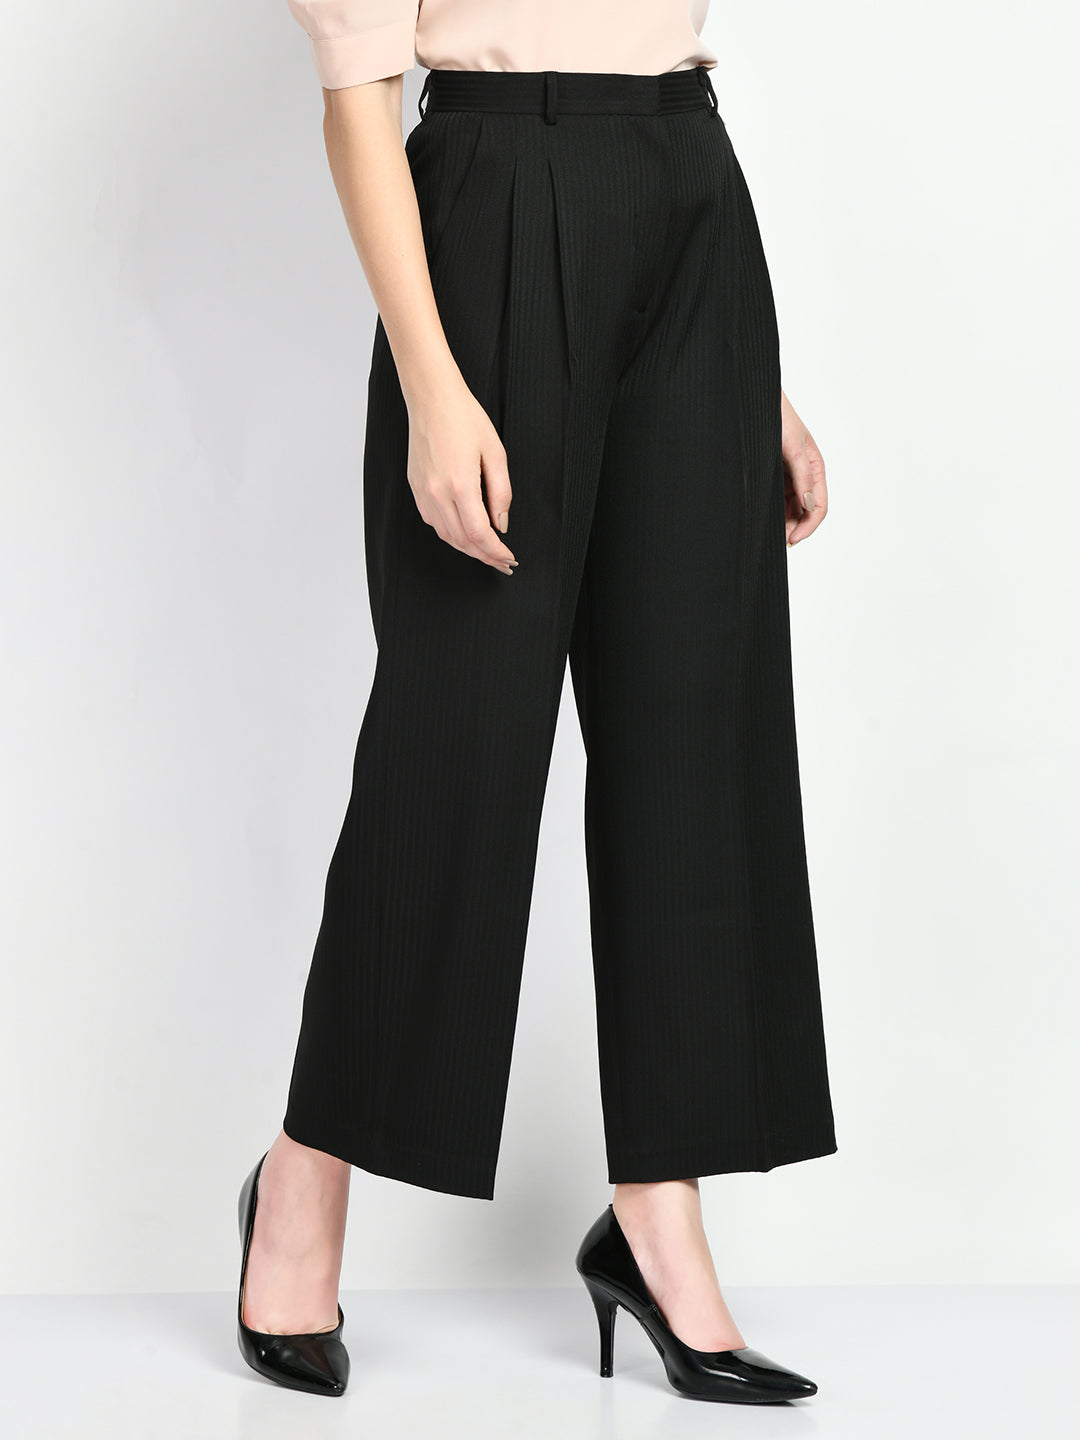 Women's Flapper 20's Style Pleated Trouser Wide Leg Black Pants